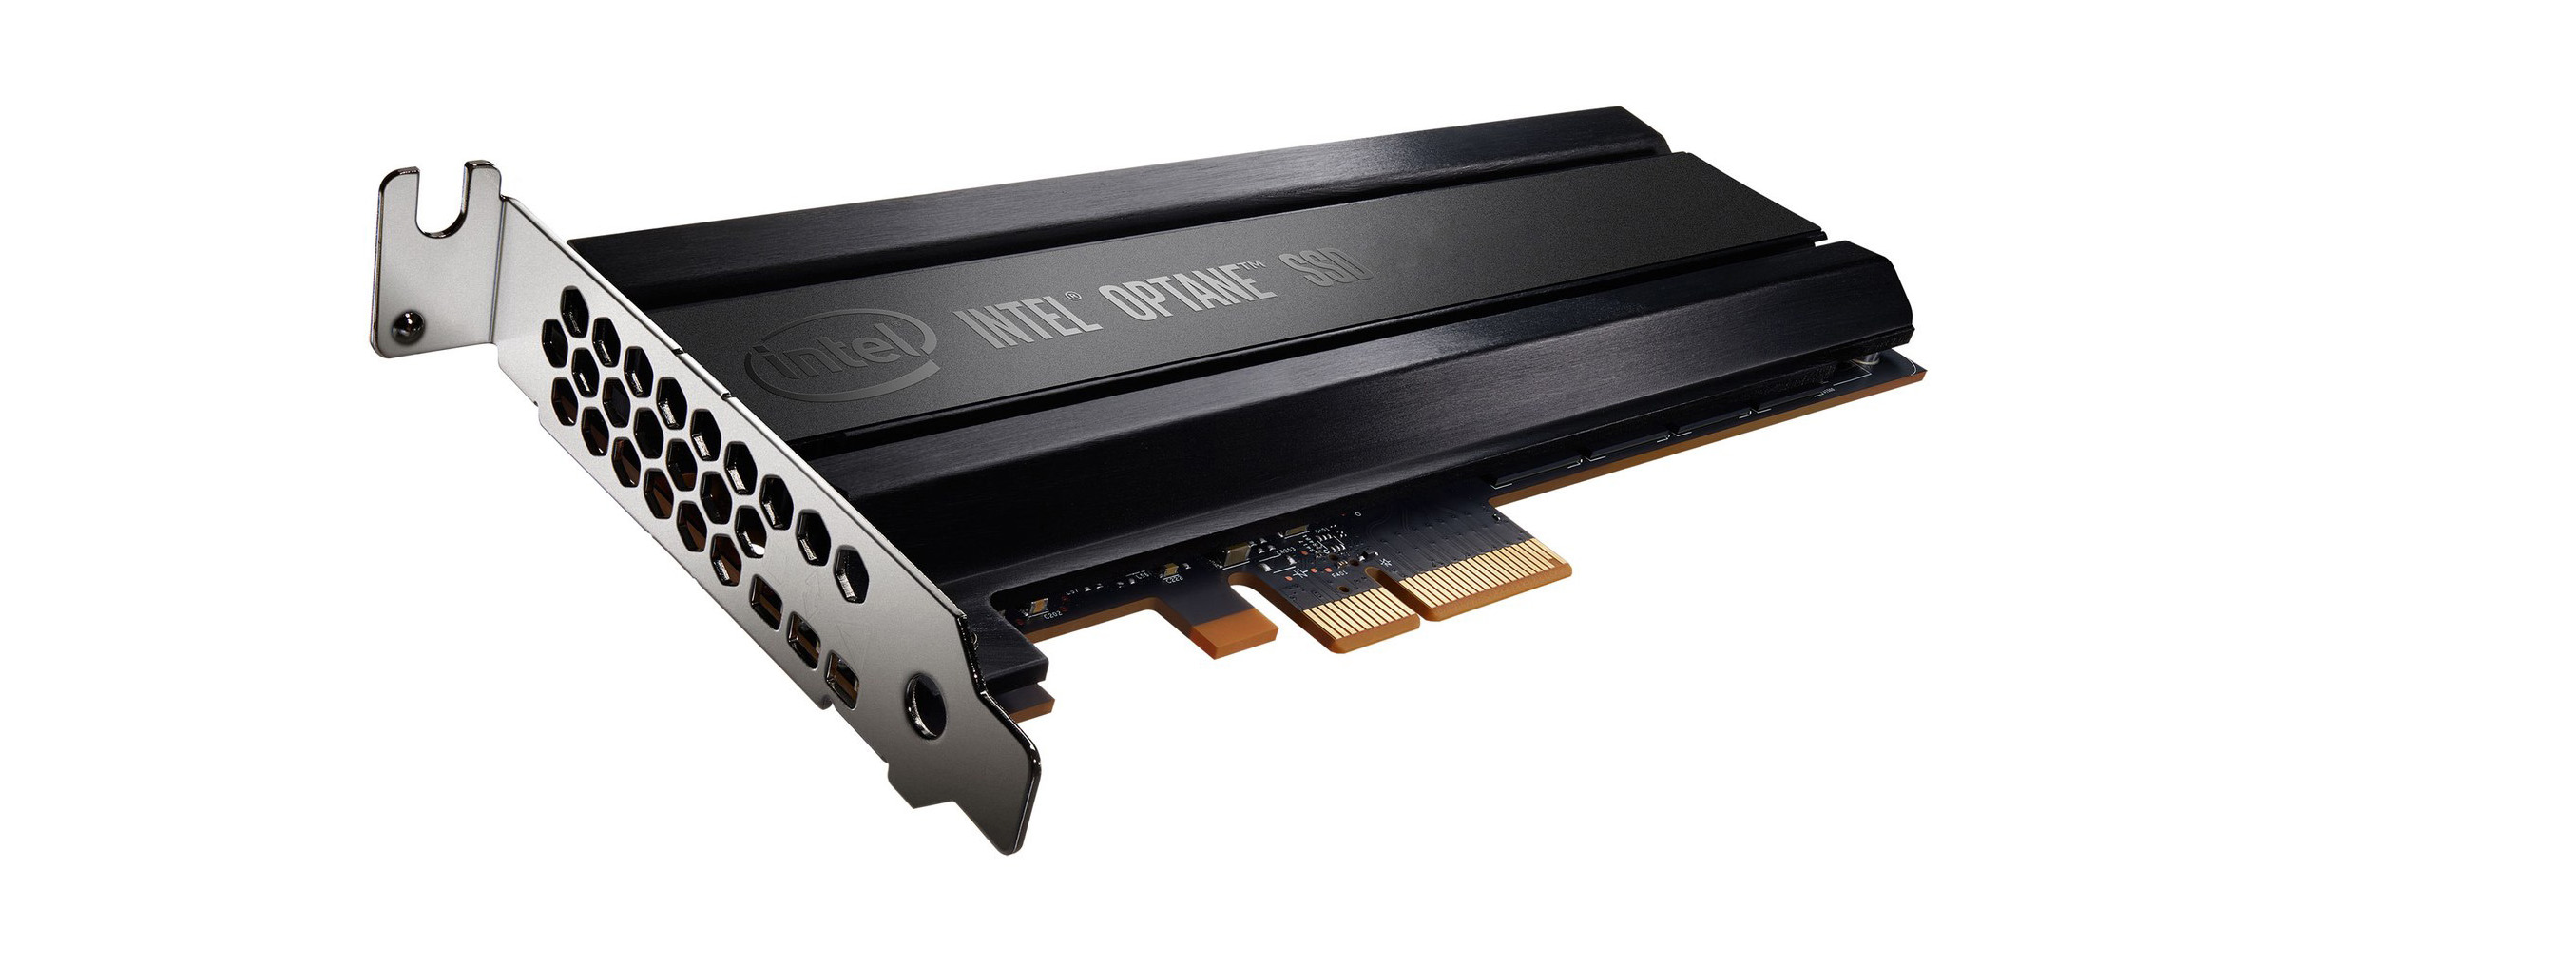 Intel phát triển dòng SSD Optane 900P dung lượng đến 1,5TB